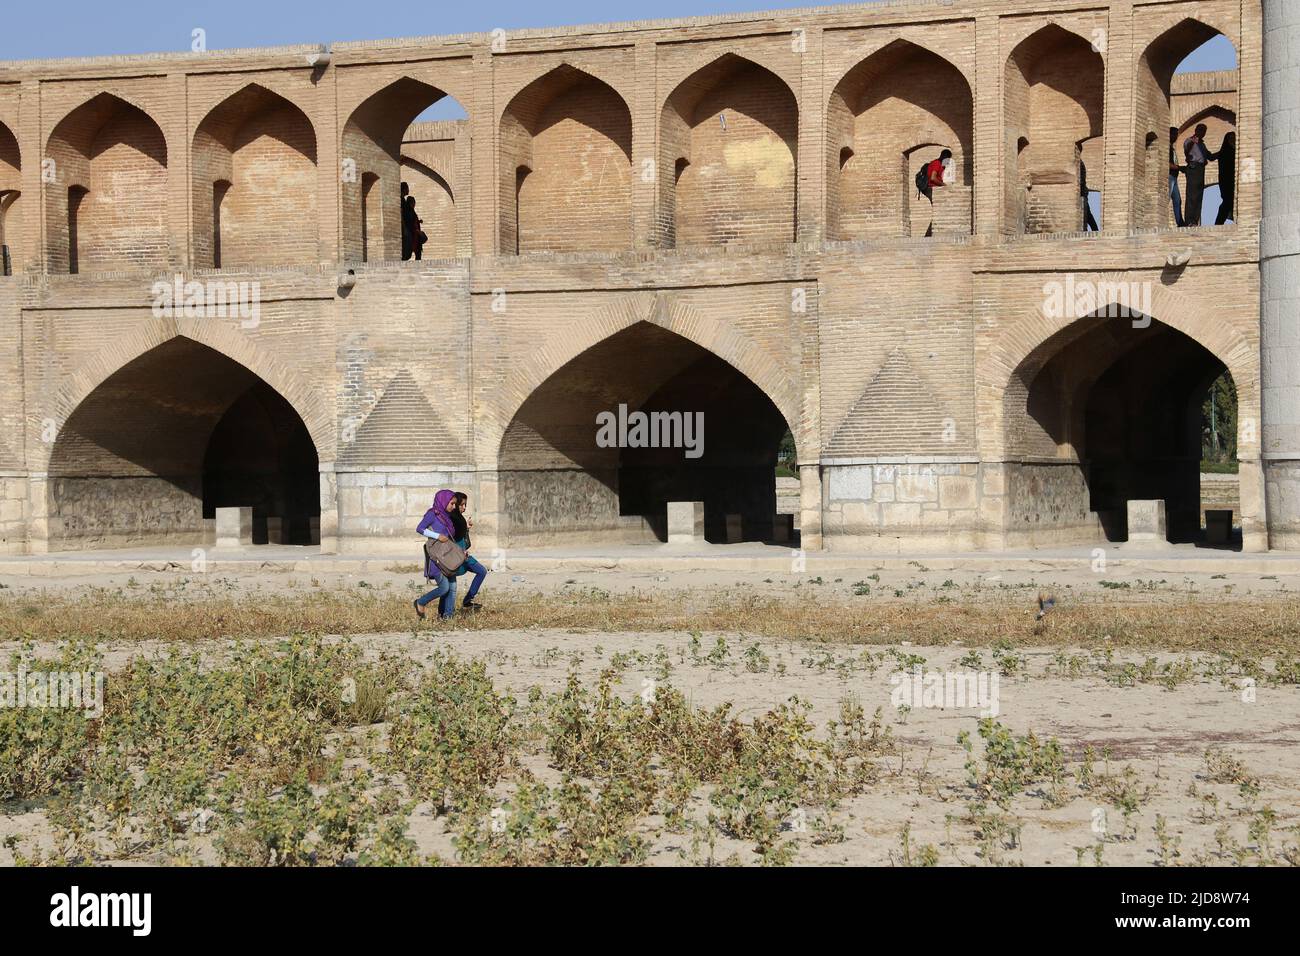 Allah-Verdi-Khan-Brücke à Isfahan, Iran. Auf persisch heißt sie si-o-se Pol. Die Brücke erwerk und veräussern. Die Brücke Hat 33 Bögen. Der si-o-se Pol ist meistens ausgetrocknet. Betrieb einer Bührung von Dienstleistungen. Zwei Frauen queren den Fluss neben der Brücke. Banque D'Images